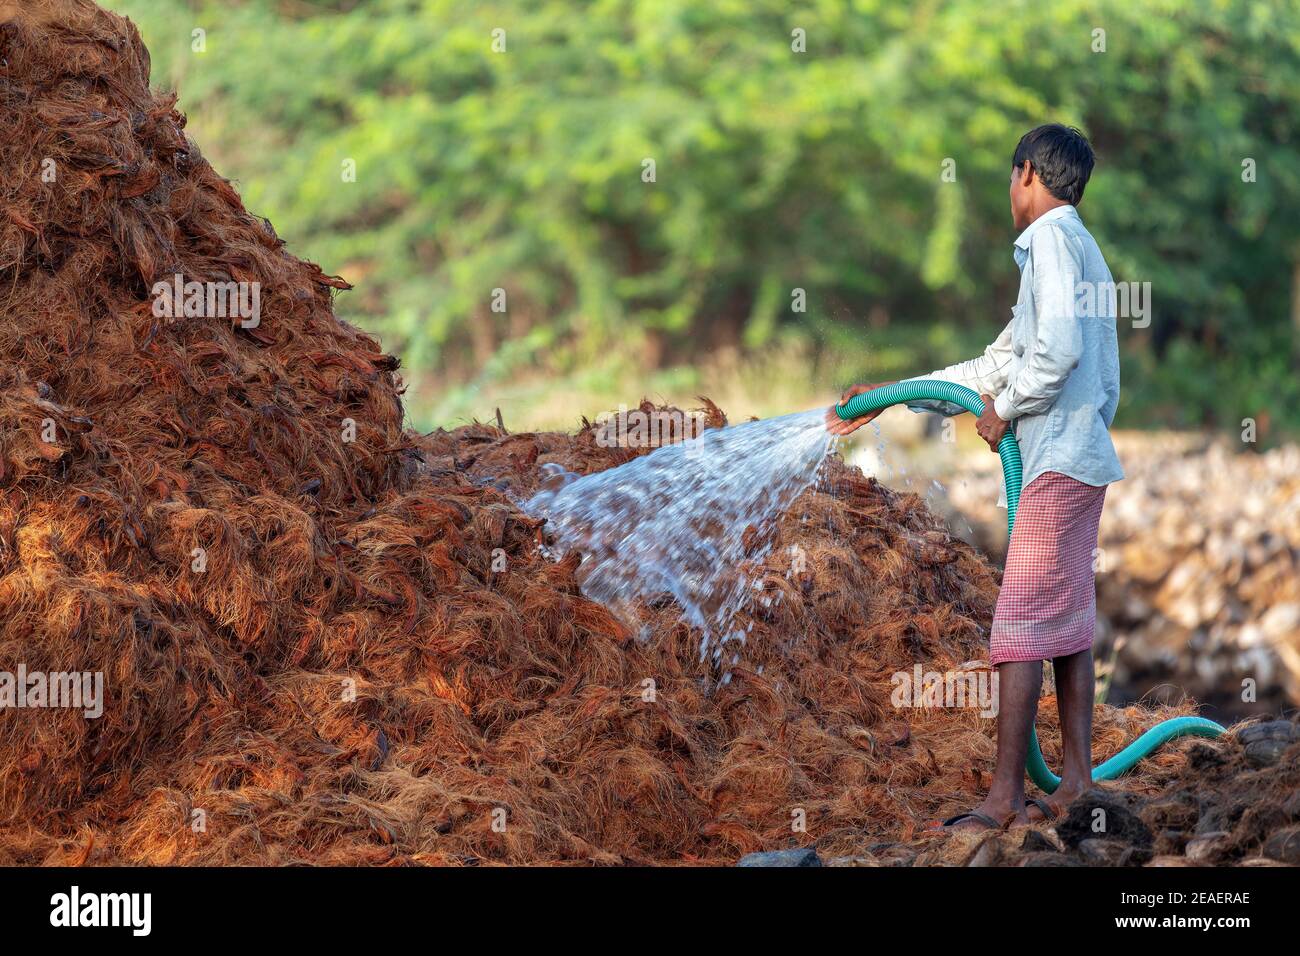 indischer Bauer wässern Kokosnussschale, um Kokosirenseil zu machen, die Ist aus Naturfaser, die aus äußeren extrahiert wird Kokosnussschale Stockfoto